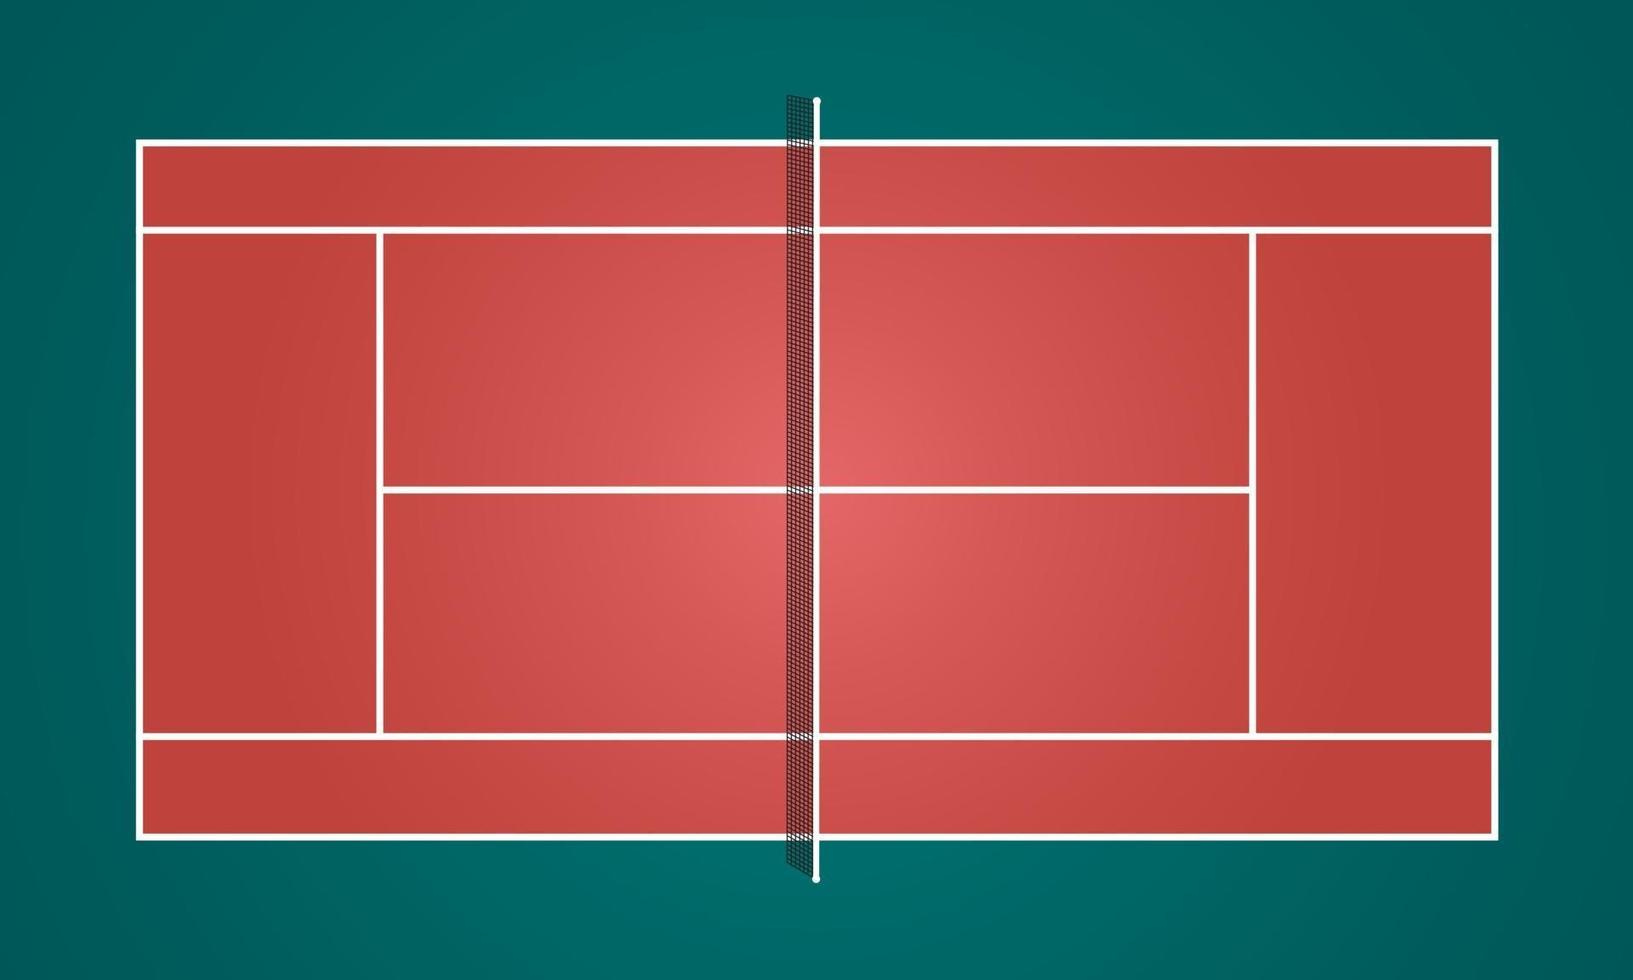 diseño de fondo de vector de ilustración al aire libre de campo de tenis